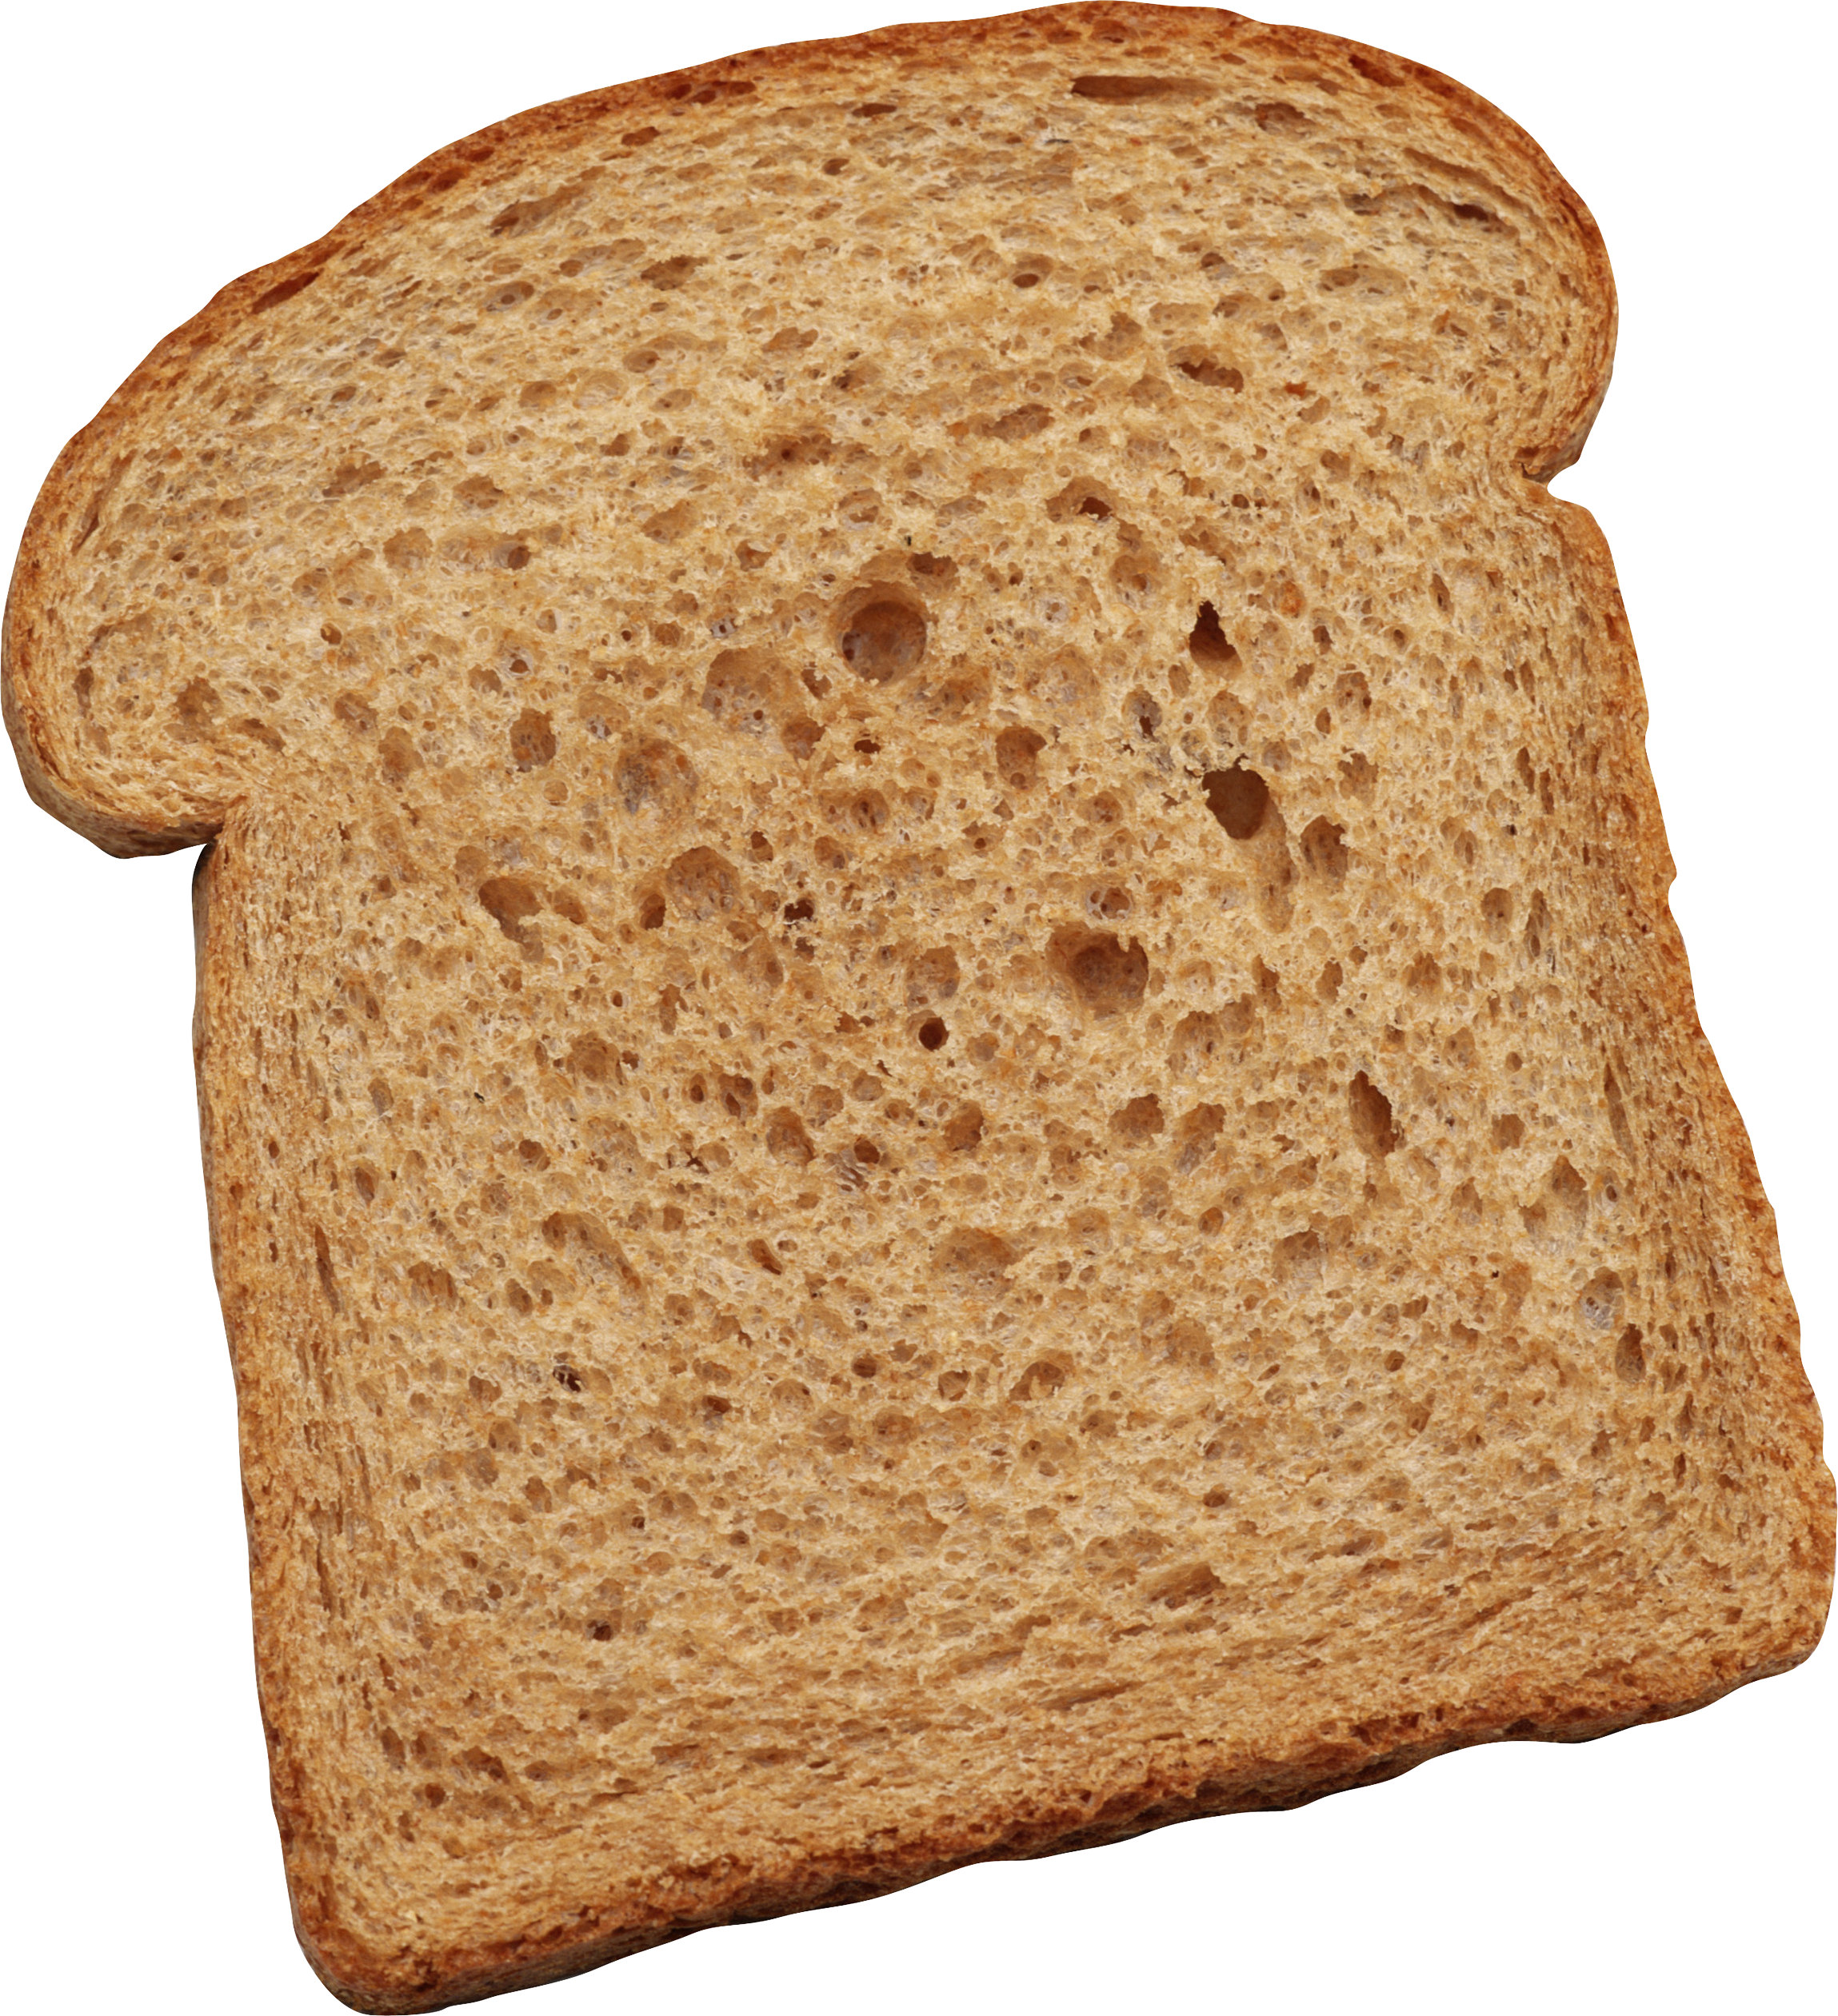 Кусок тостового хлеба. Ломоть хлеба. Кусок хлеба. Ломтик хлеба. Кусок хлеба на белом фоне.